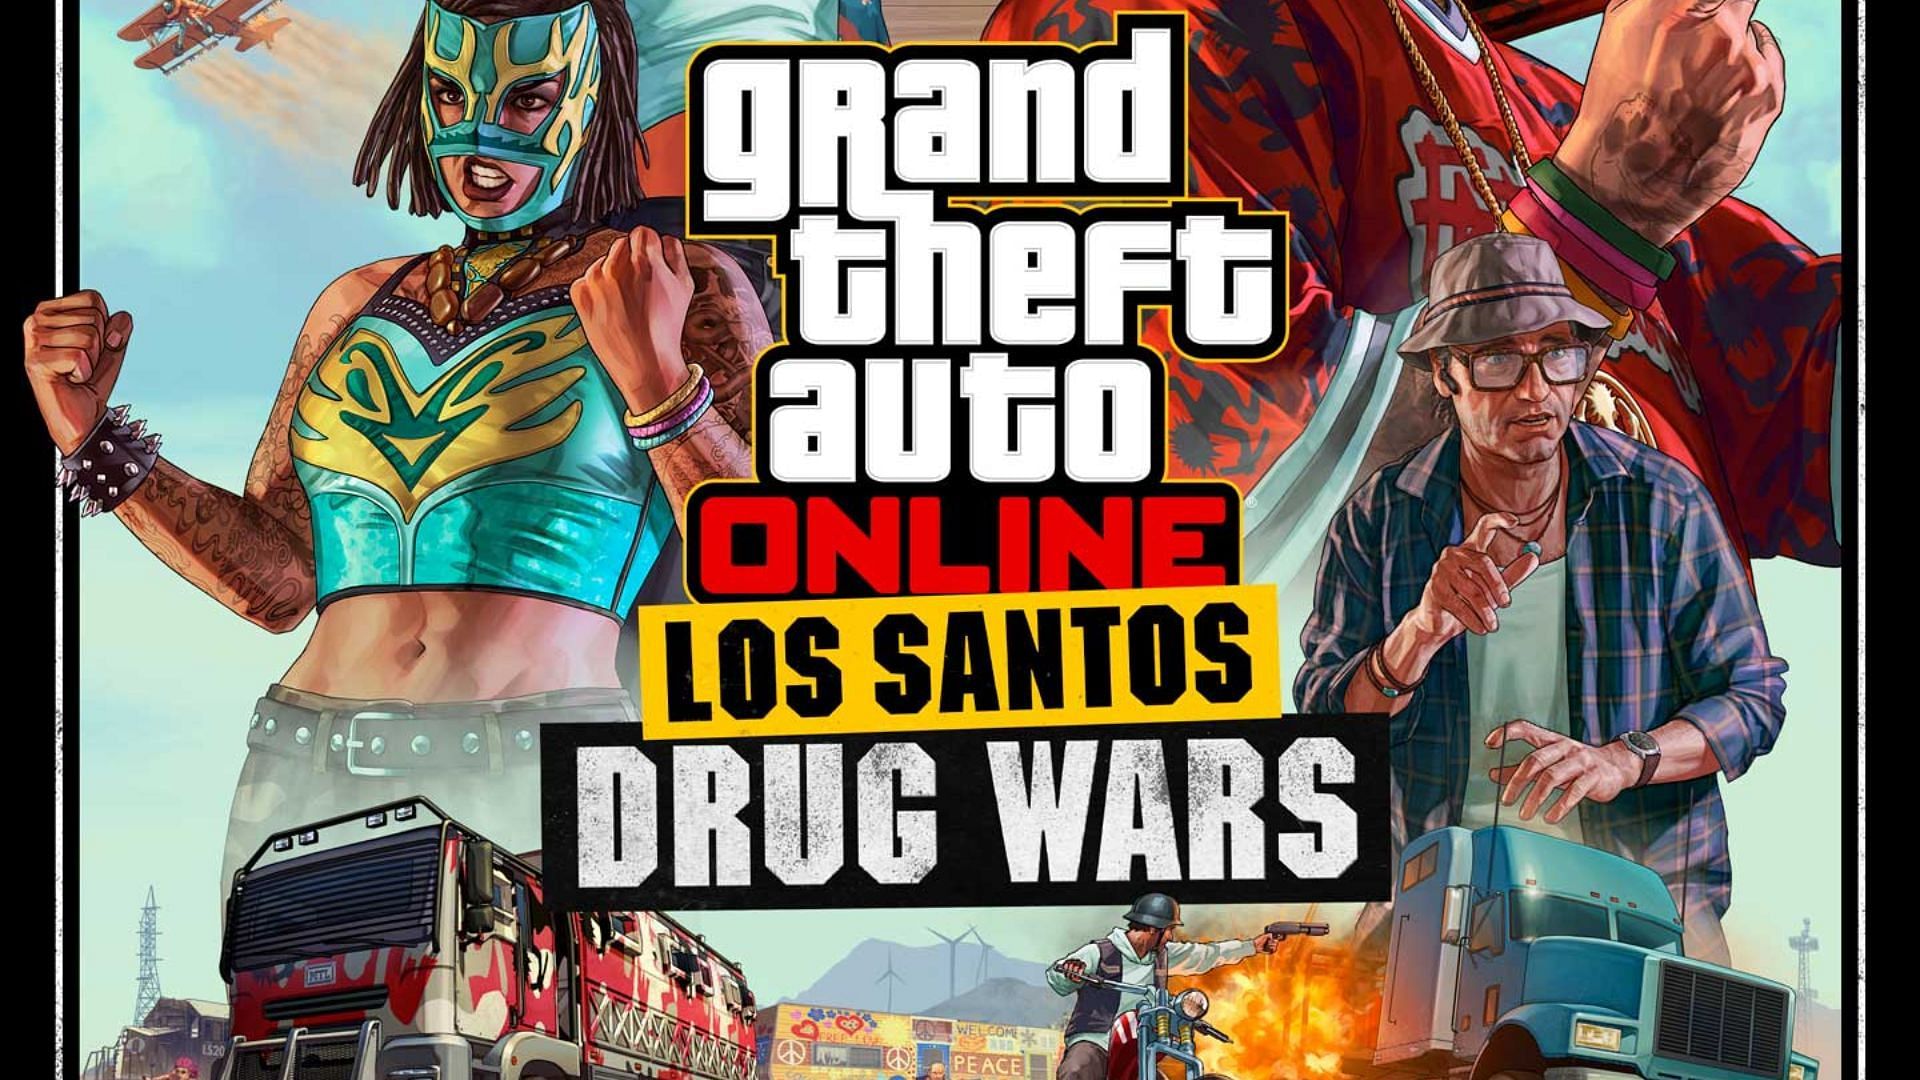 Full patch notes for GTA Online Los Santos Drug Wars have now been revealed. (Image via Rockstar Games)